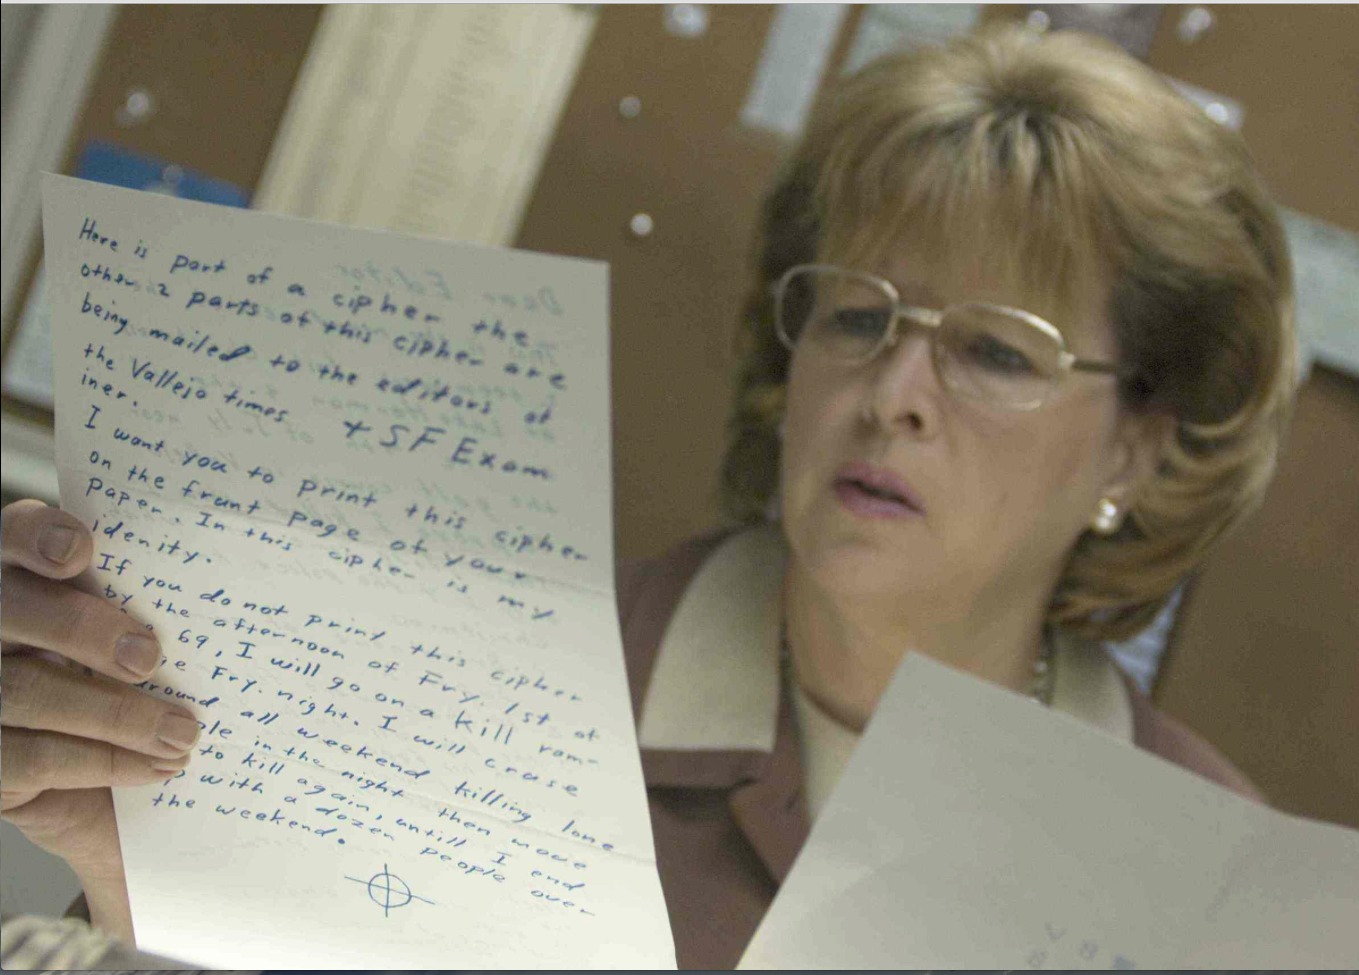 Zodiac killer's handwriting for the film 